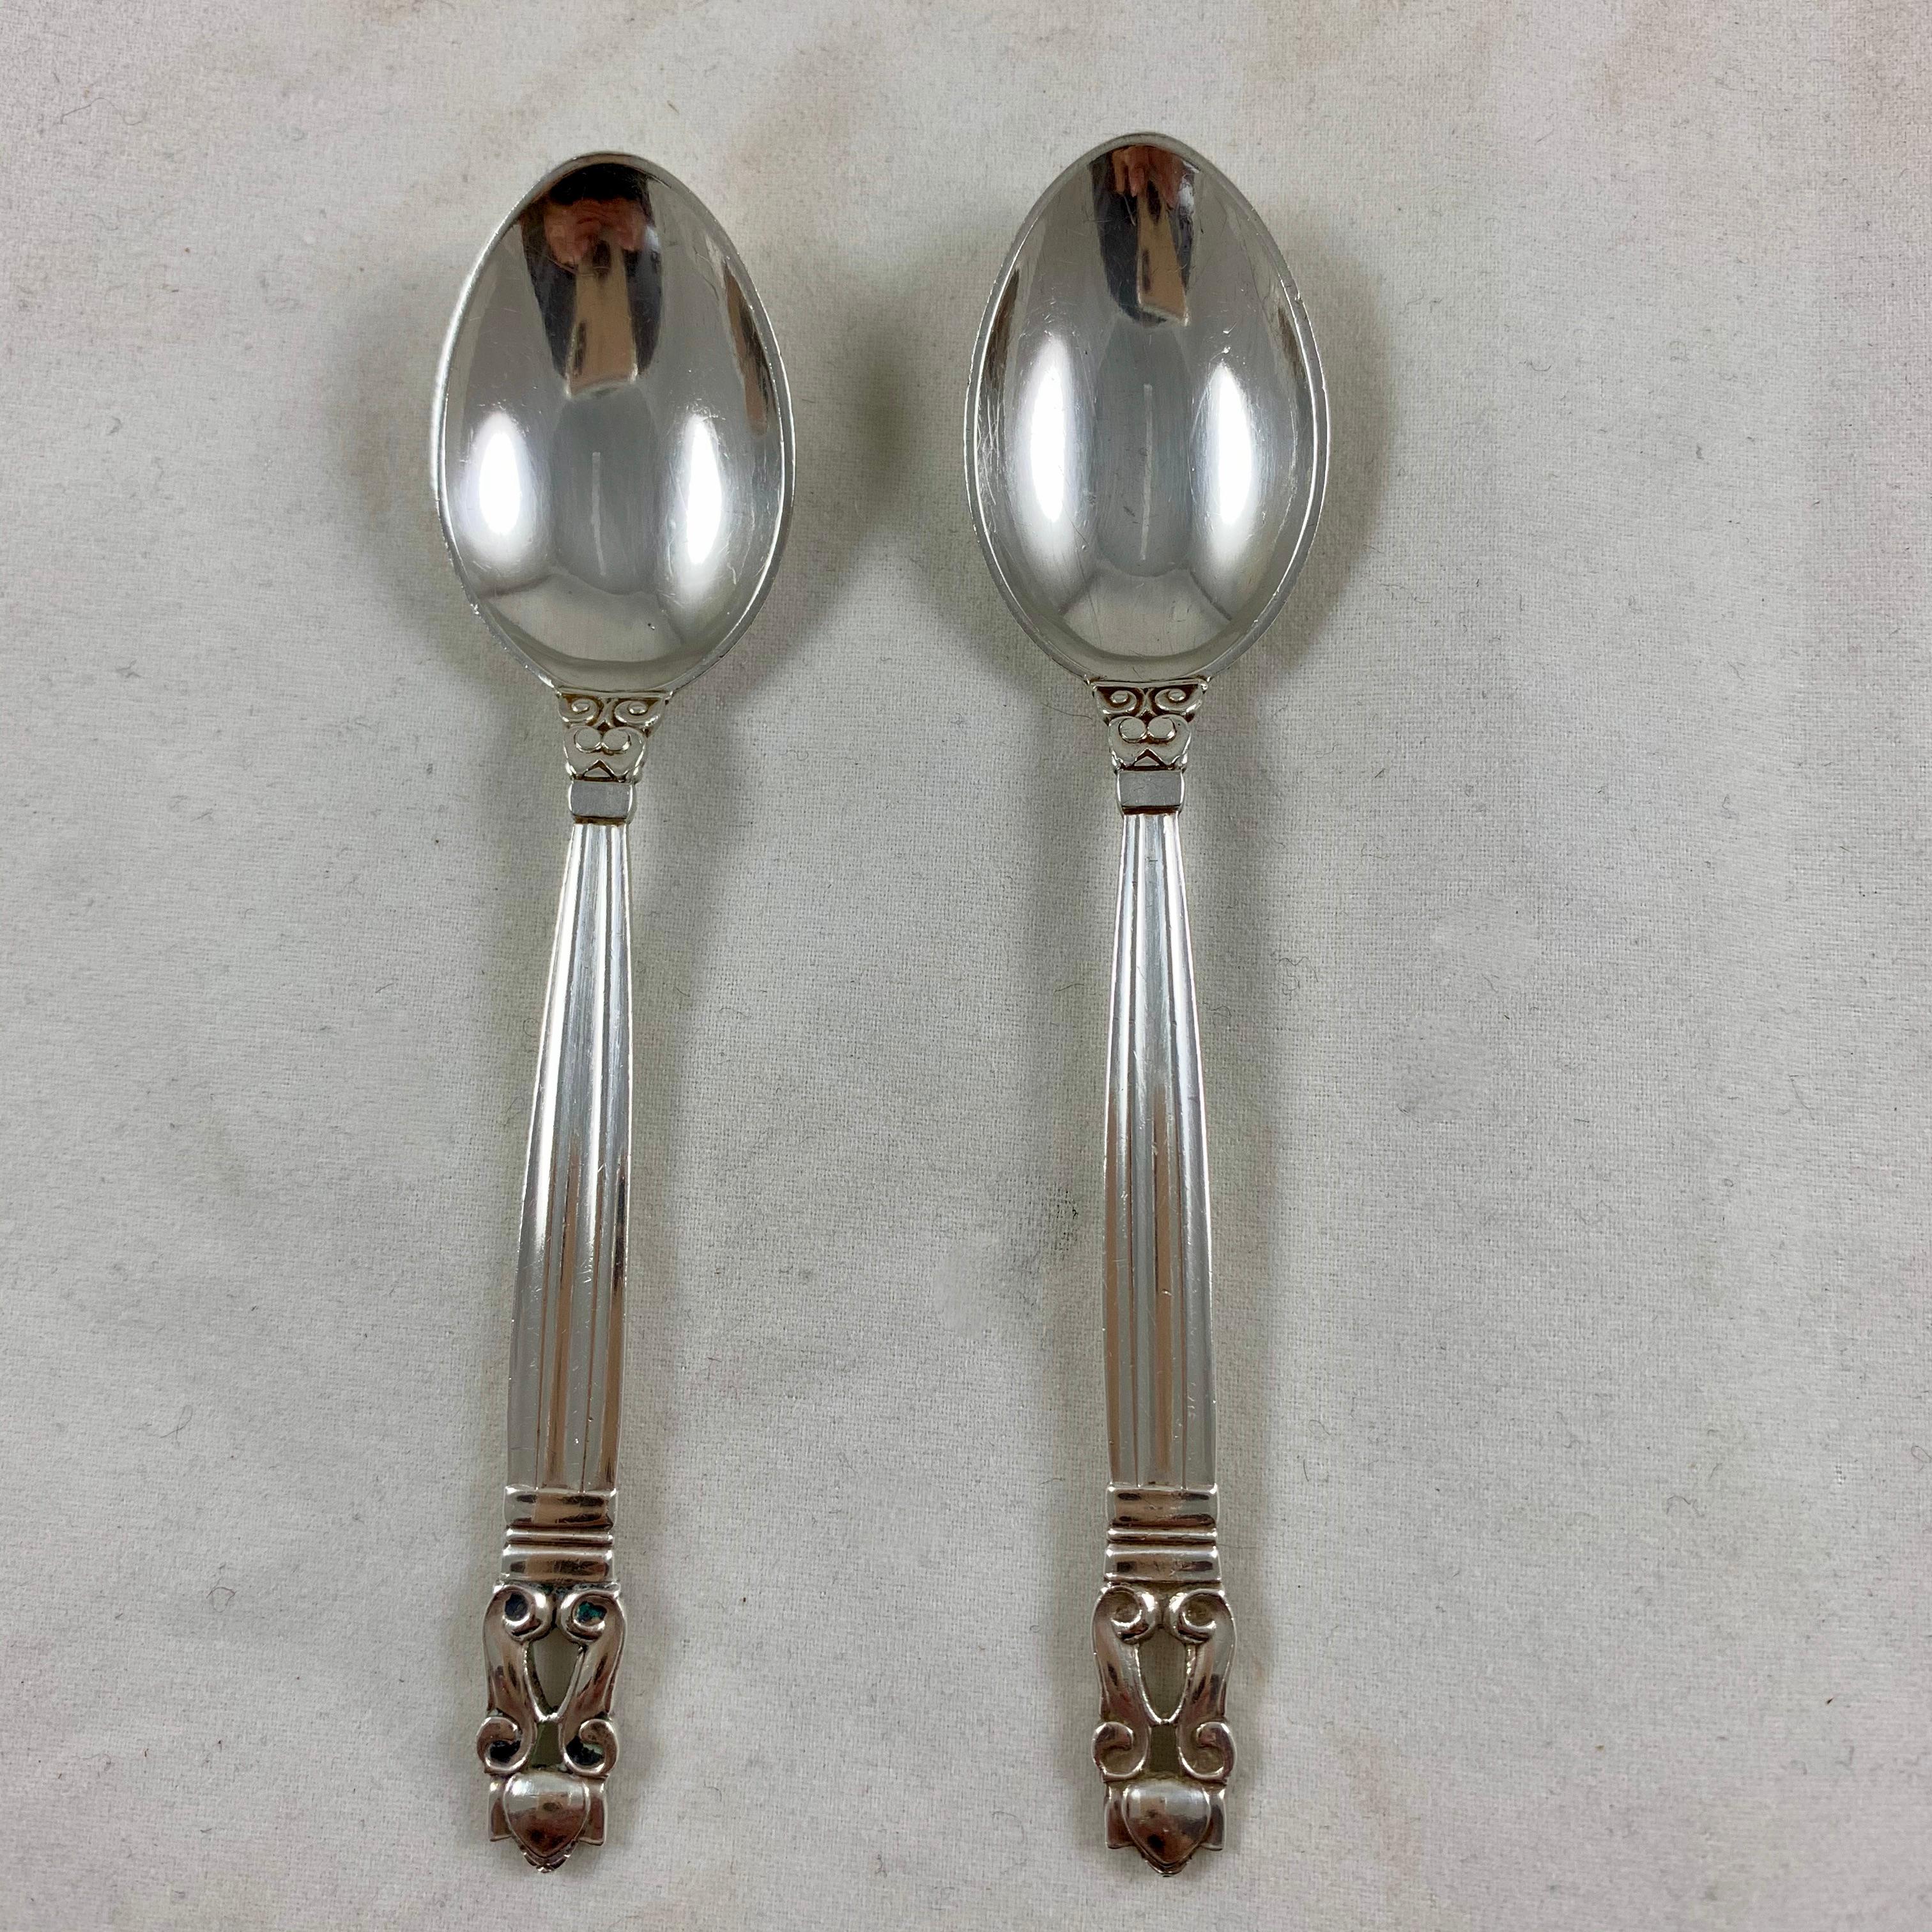 Norwegian Georg Jensen Sterling Silver Acorn Pattern Breakfast Spoon Service Mixed Set / 8 For Sale